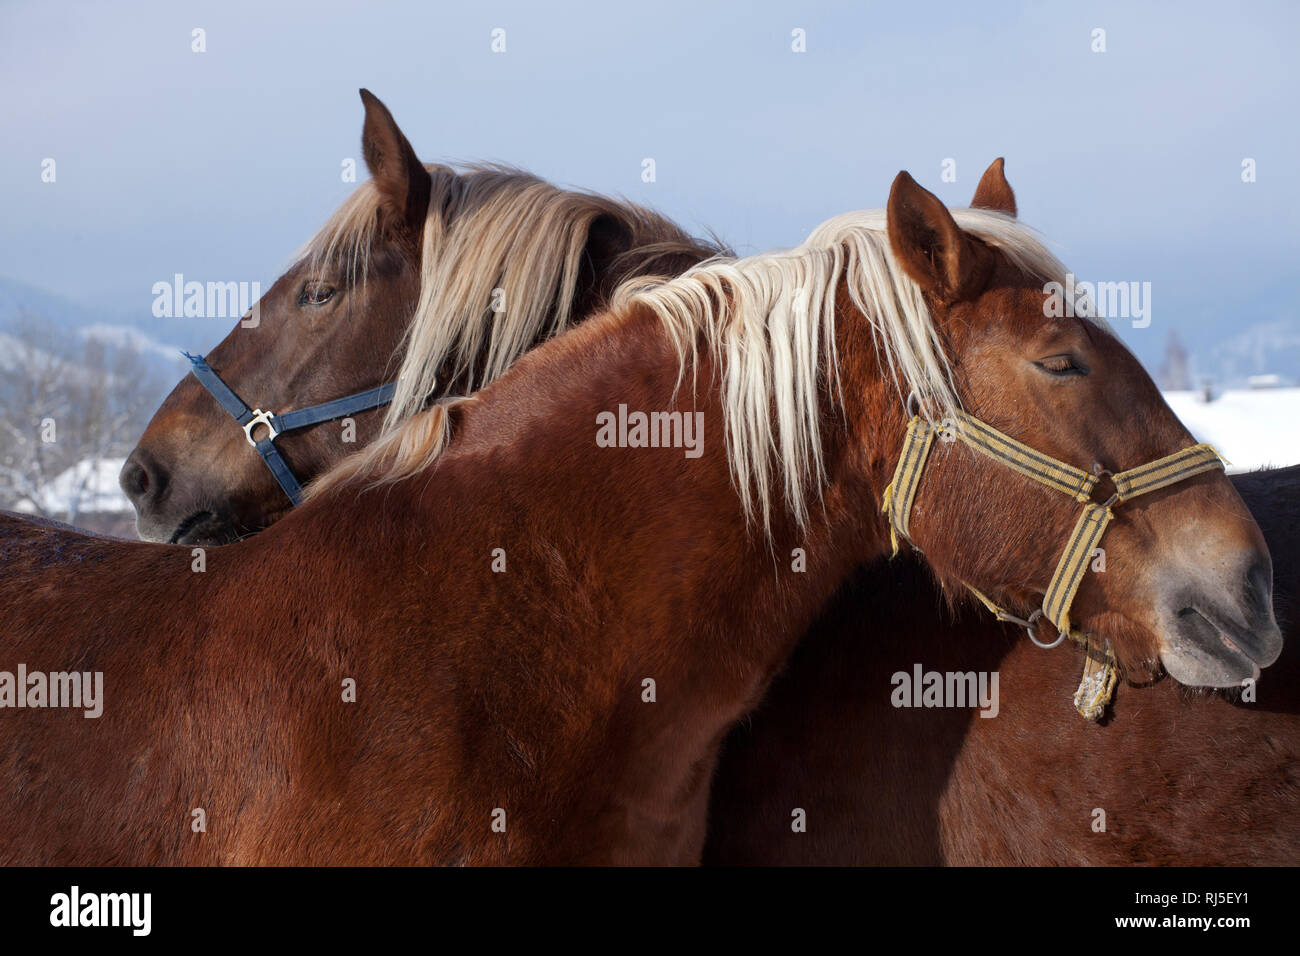 Zwei Pferde sich aneinander schmiegen Banque D'Images